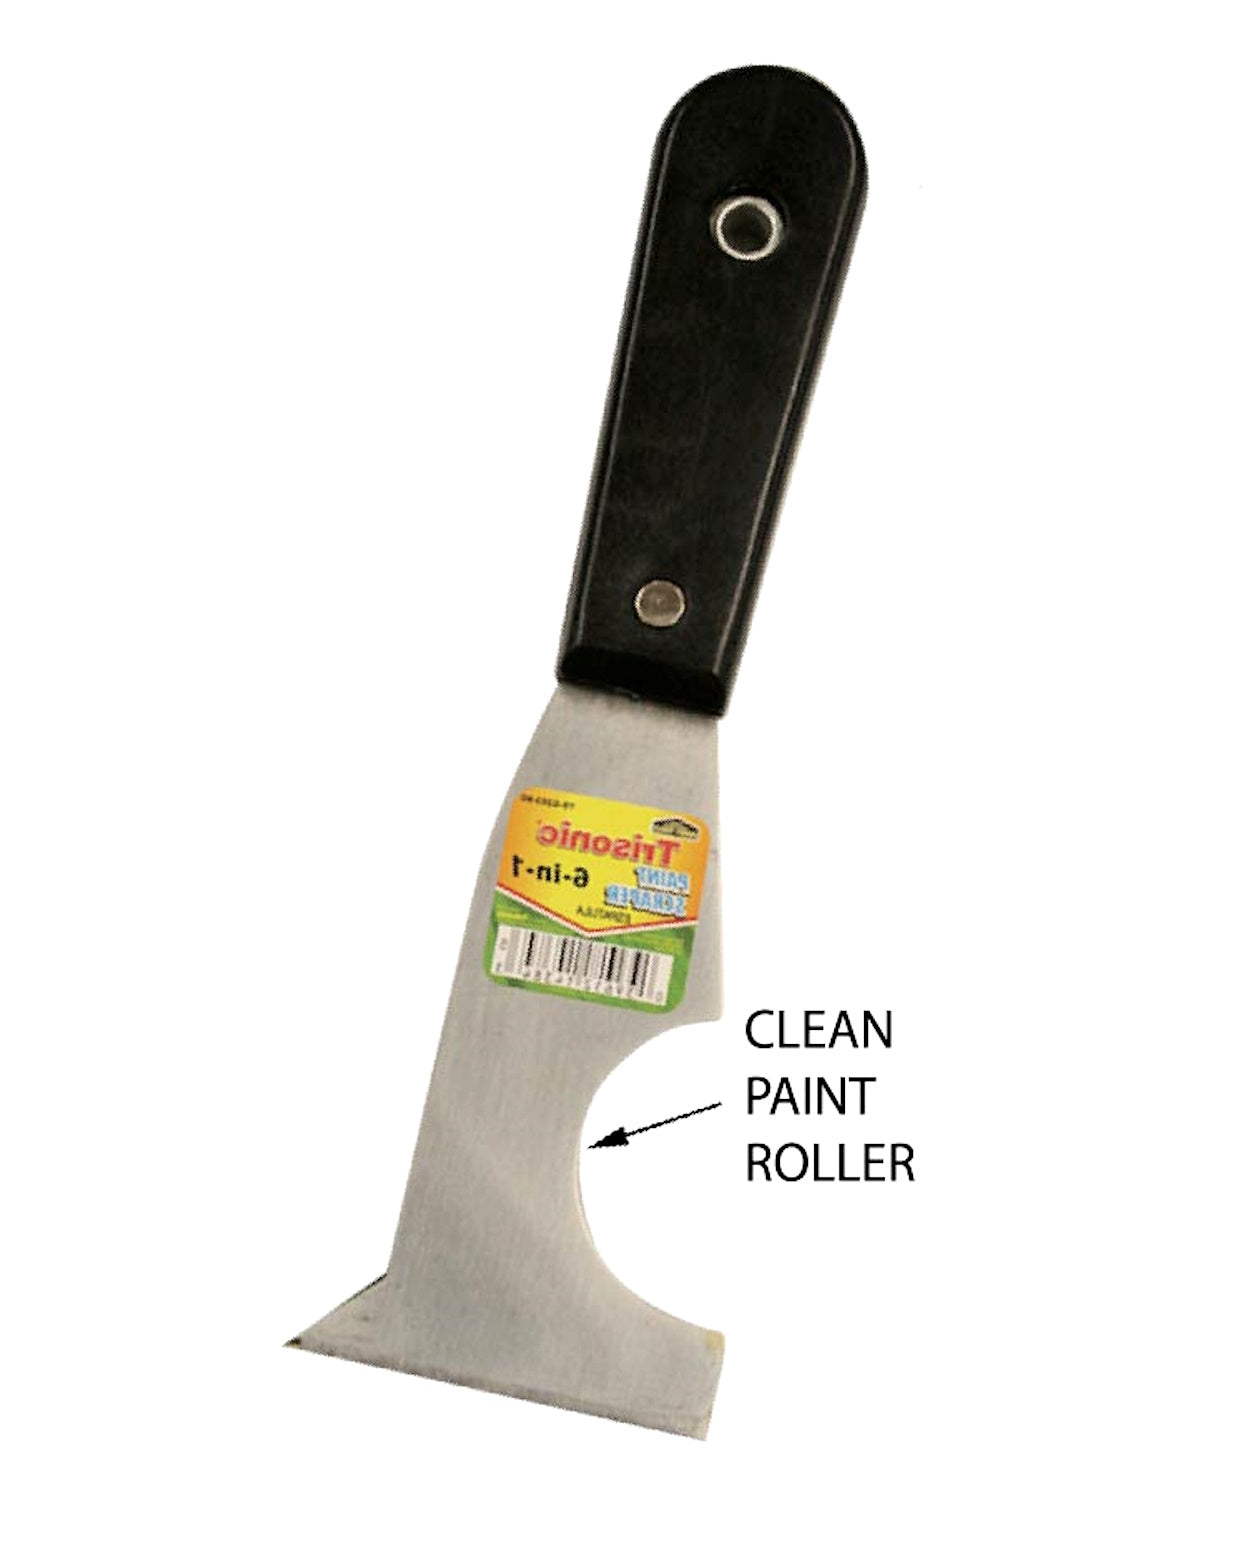 6 in 1 Paint Scraper - Multi-Purpose Various surfaces, Wood, Metal, Plastic and more